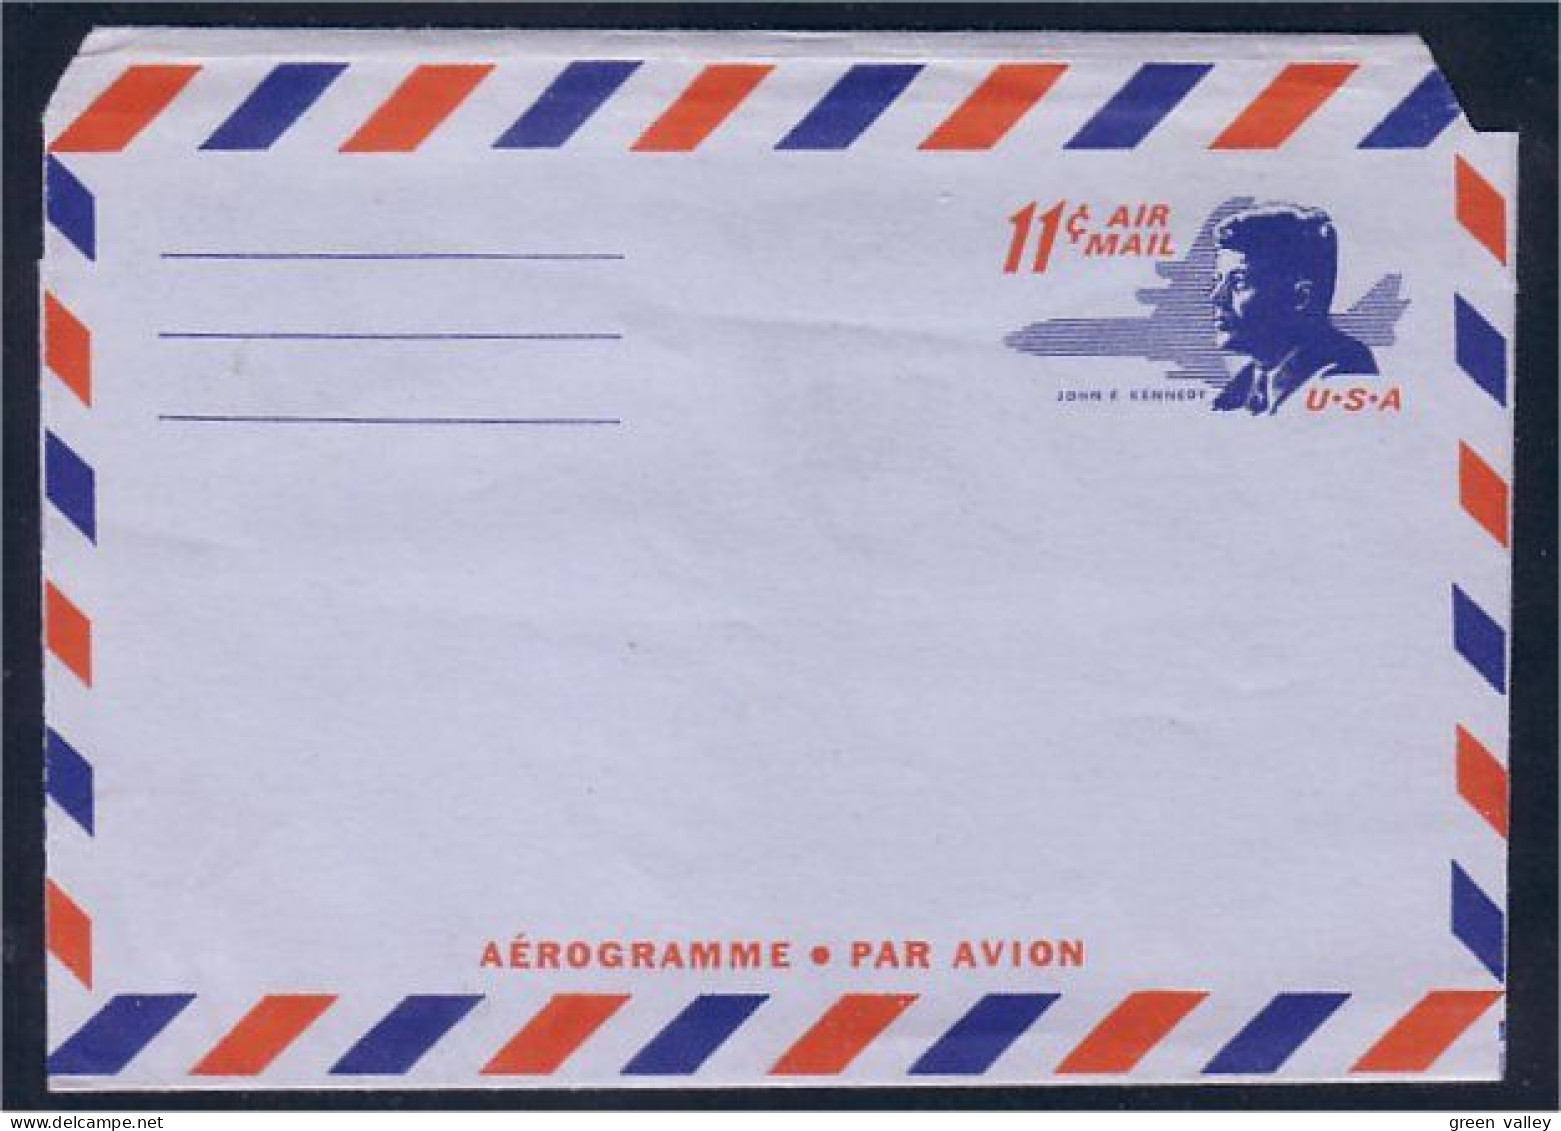 Aerogramme Air Letter Kennedy 11c Air Mail ( A82 109) - Indépendance USA